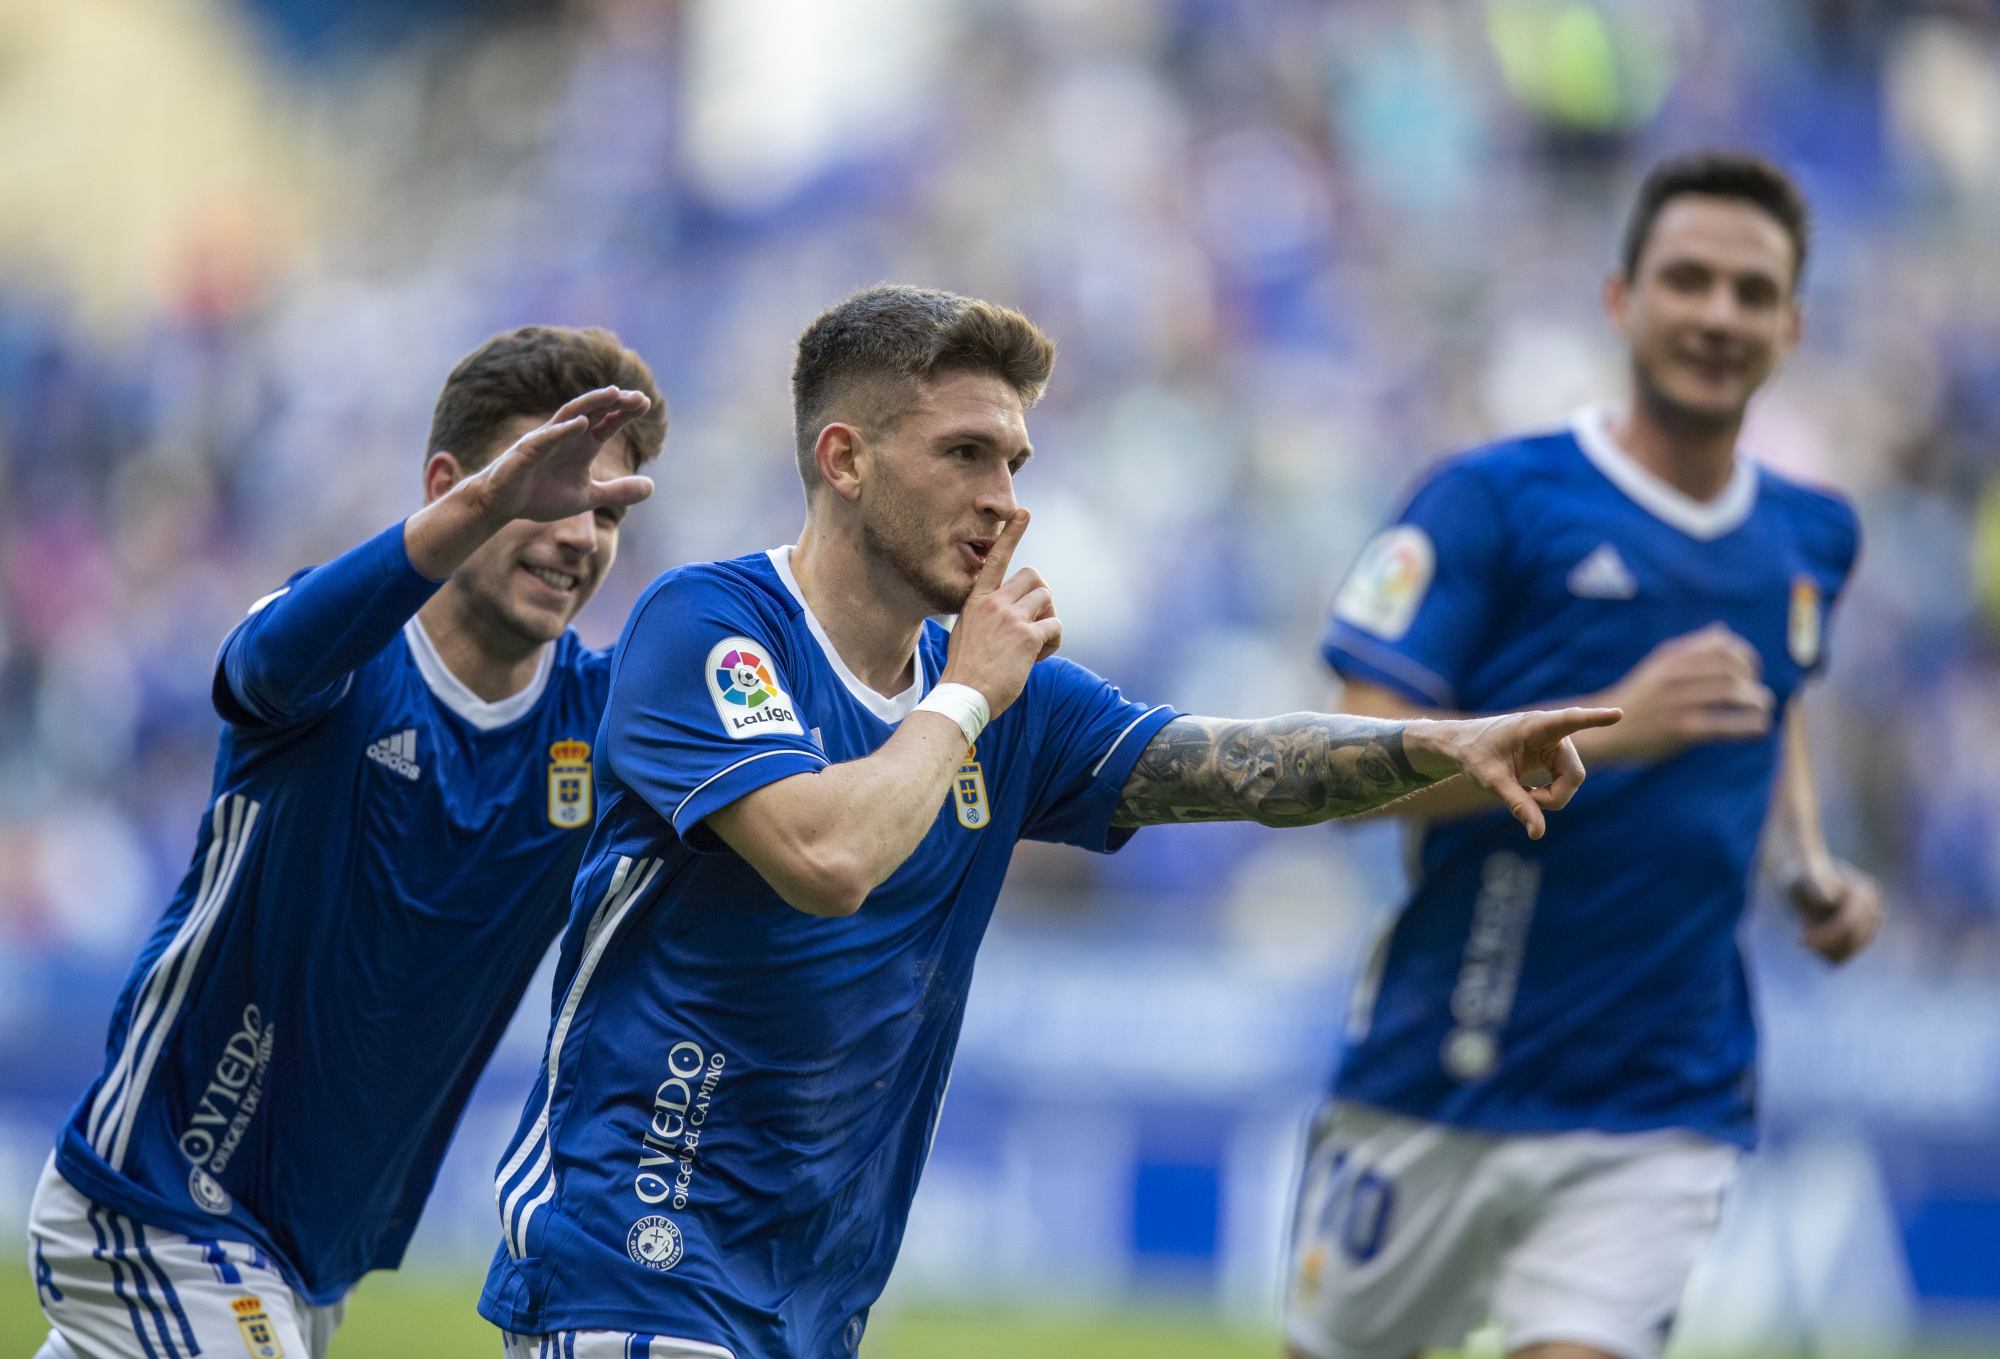 Real Oviedo - Últimas noticias